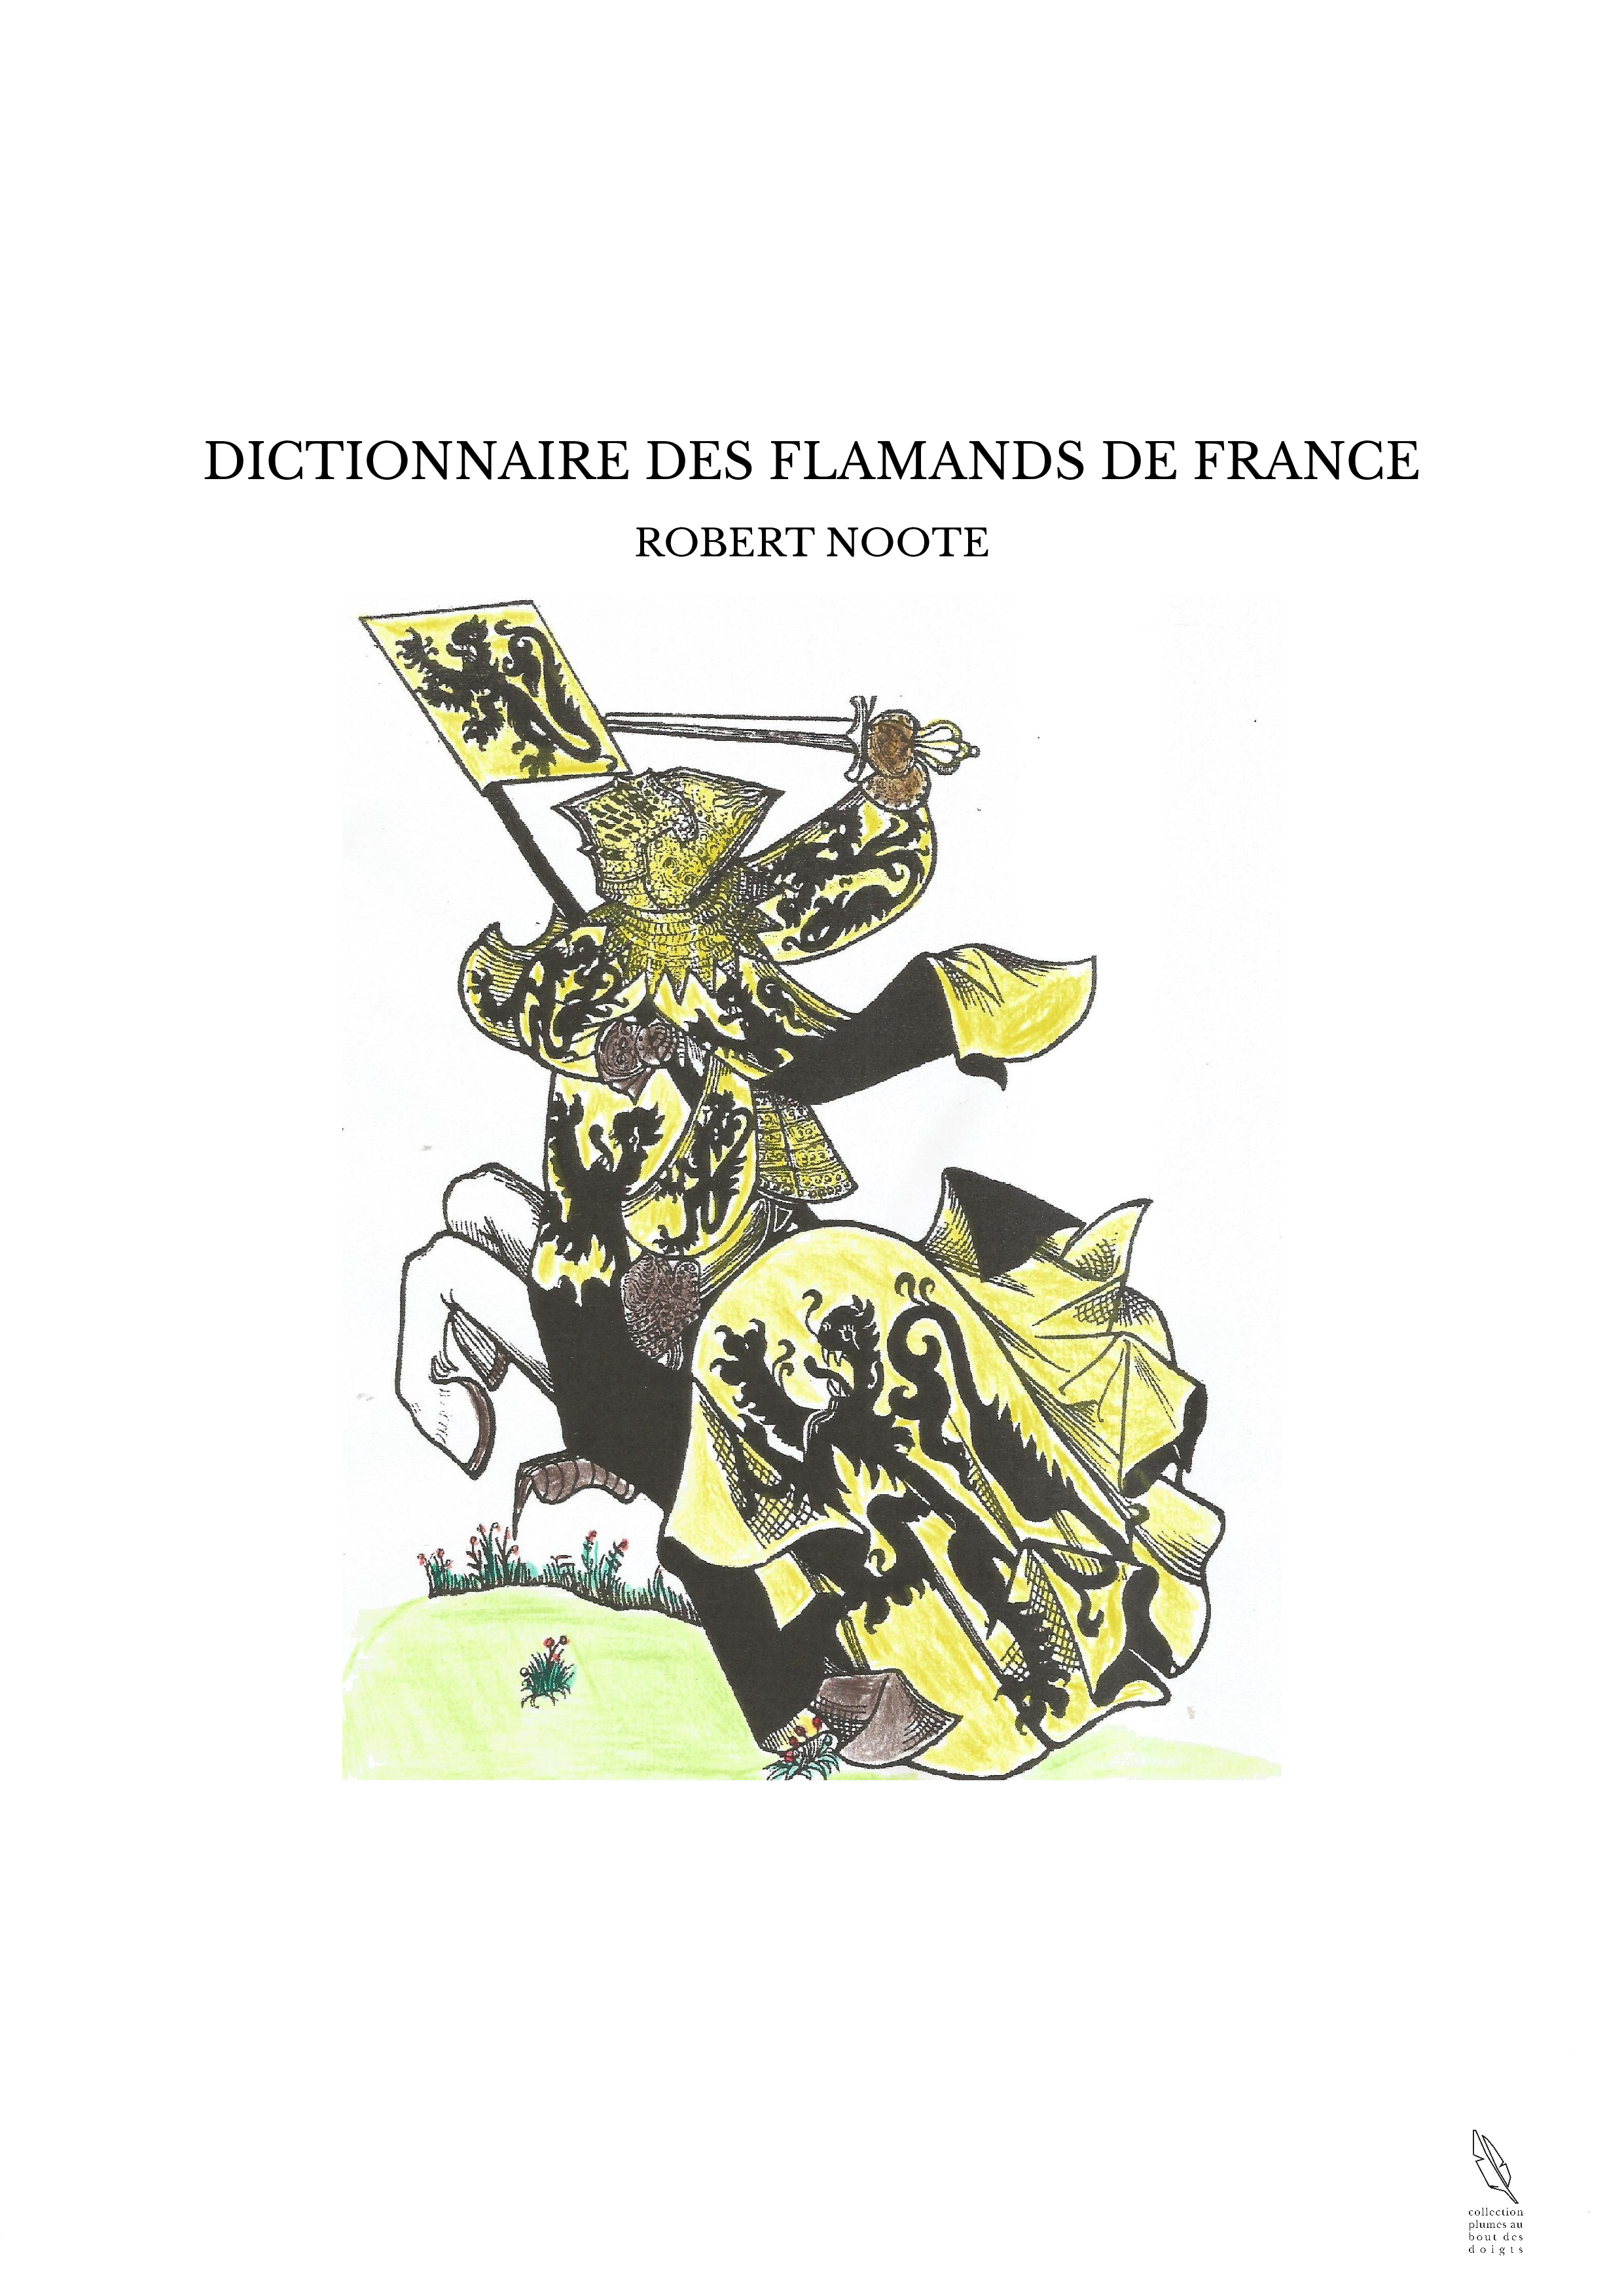 DICTIONNAIRE DES FLAMANDS DE FRANCE